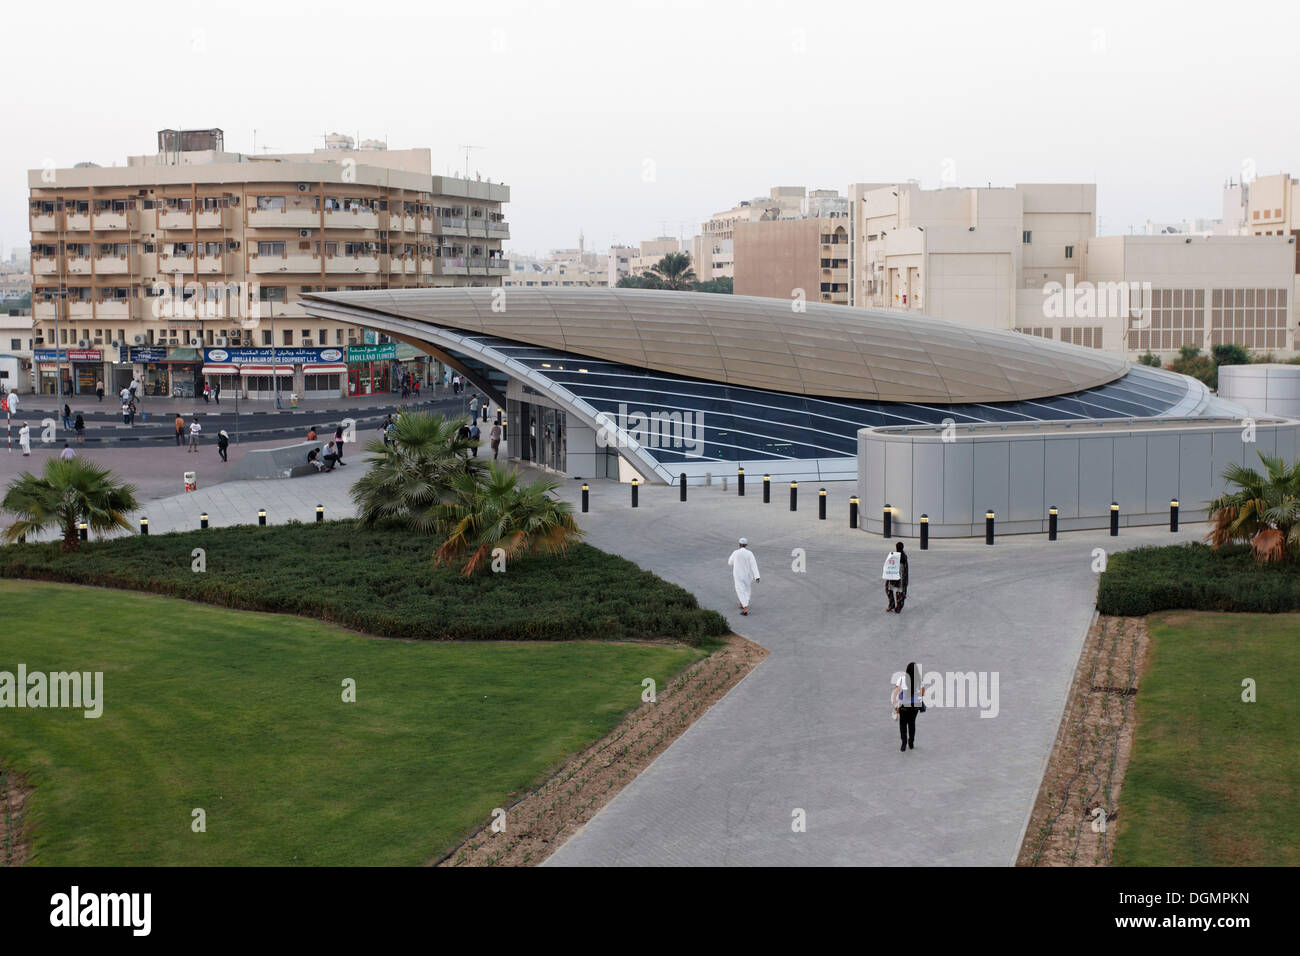 La station de métro avec un design futuriste, Union Square, quartier de Deira, Dubaï, Émirats arabes unis, au Moyen-Orient, en Asie Banque D'Images